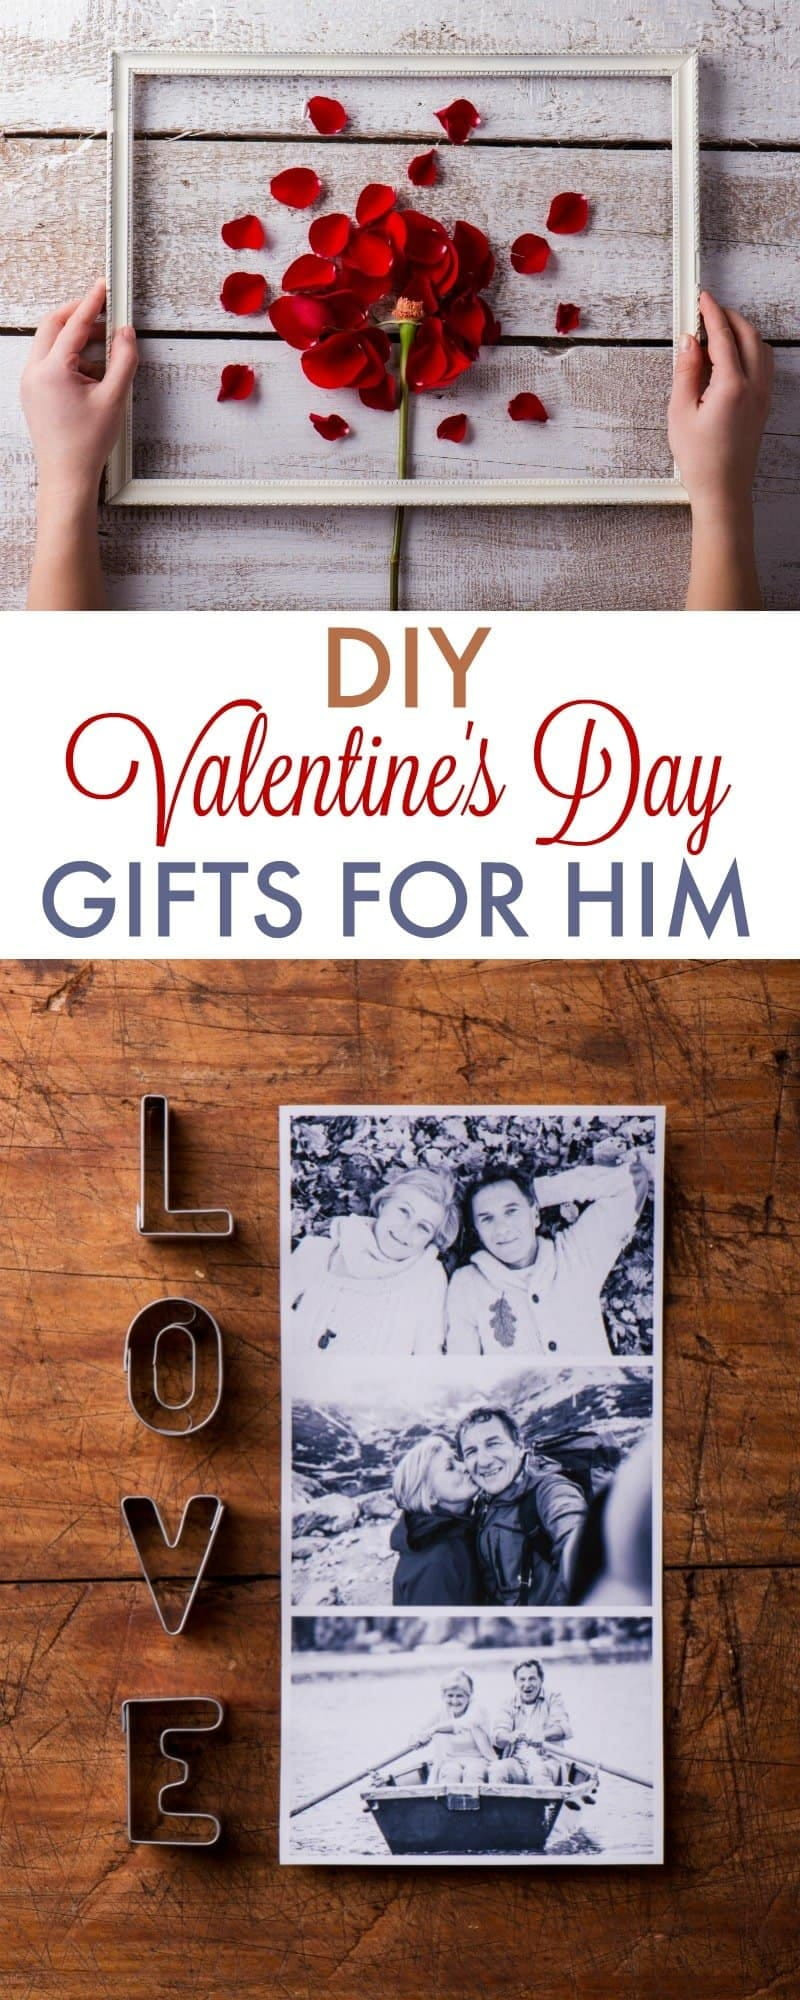 Cute Gift Ideas For Your Boyfriend
 DIY Valentine s Day Gifts for Boyfriend 730 Sage Street